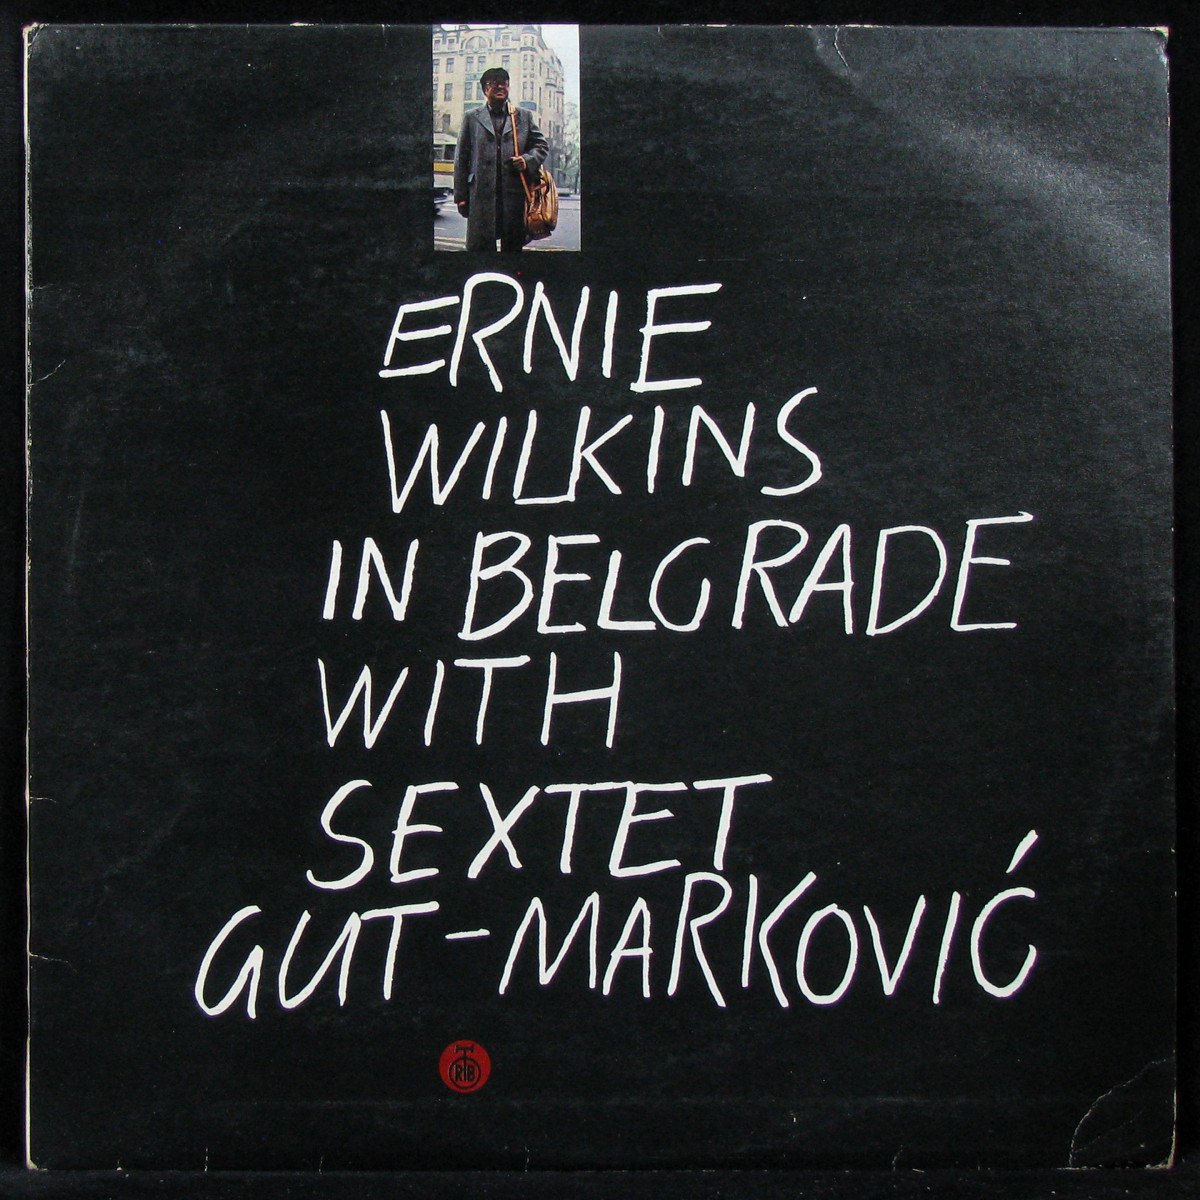 LP Ernie Wilkins / Sextet Gut-Markovic — Ernie Wilkins In Belgrade With Sextet Gut-Markovic фото